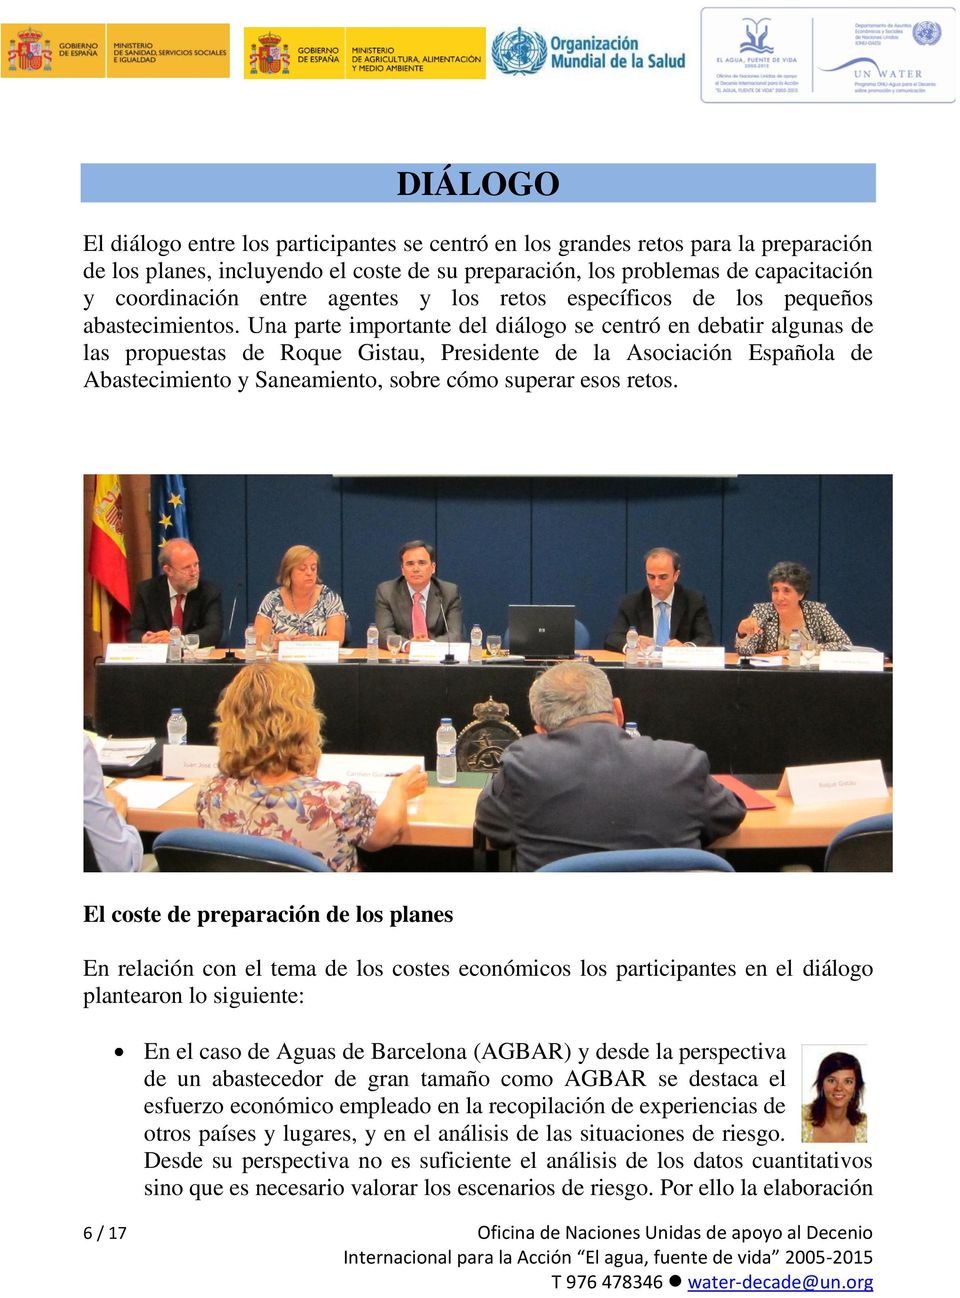 Una parte importante del diálogo se centró en debatir algunas de las propuestas de Roque Gistau, Presidente de la Asociación Española de Abastecimiento y Saneamiento, sobre cómo superar esos retos.